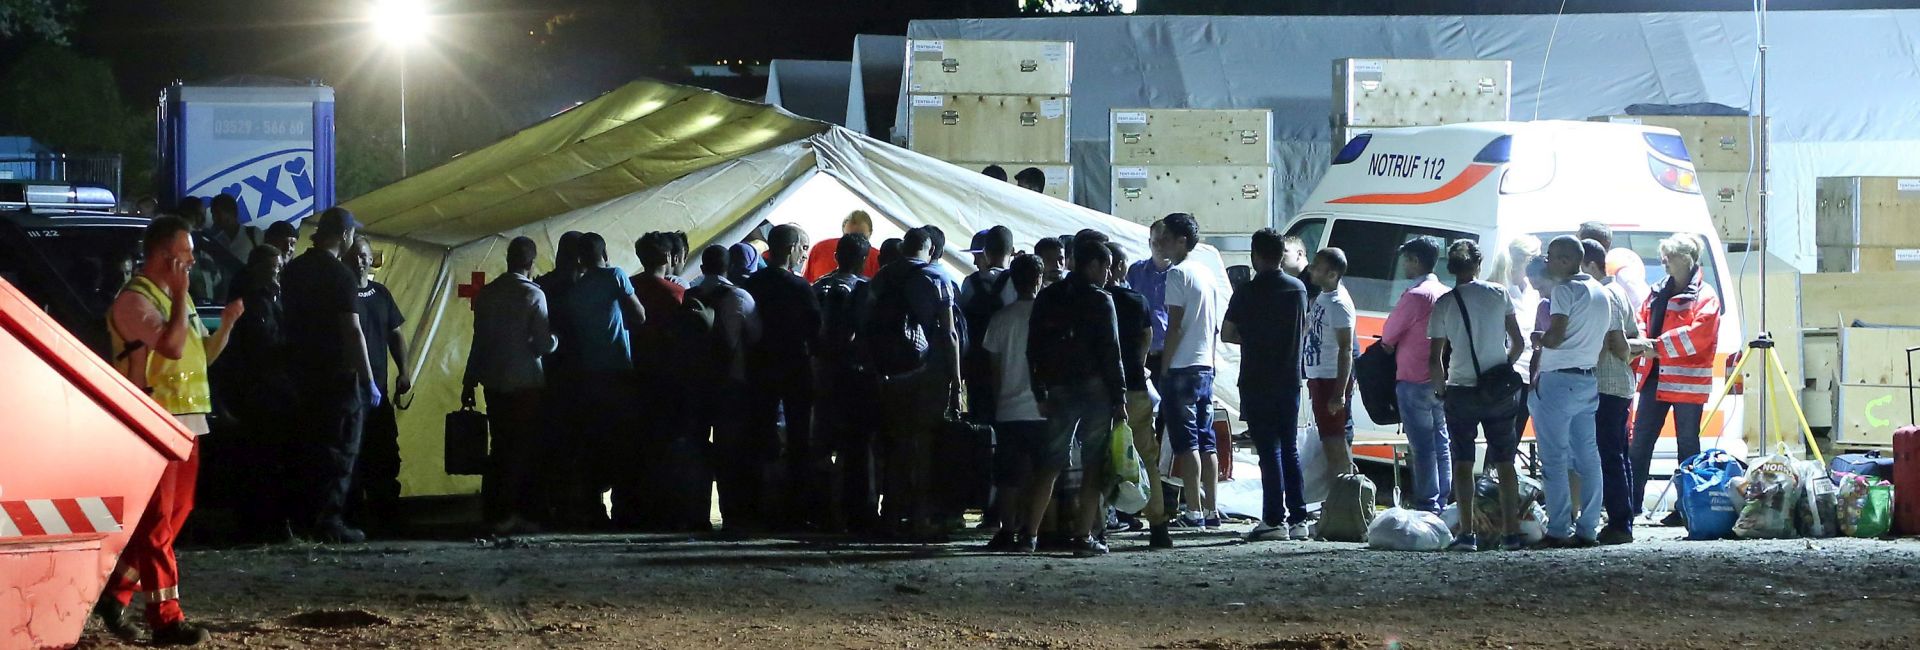 SIRIJCI I AFGANISTANCI: Osam ozlijeđenih u tučnjavi u izbjegličkom logoru u Dresdenu